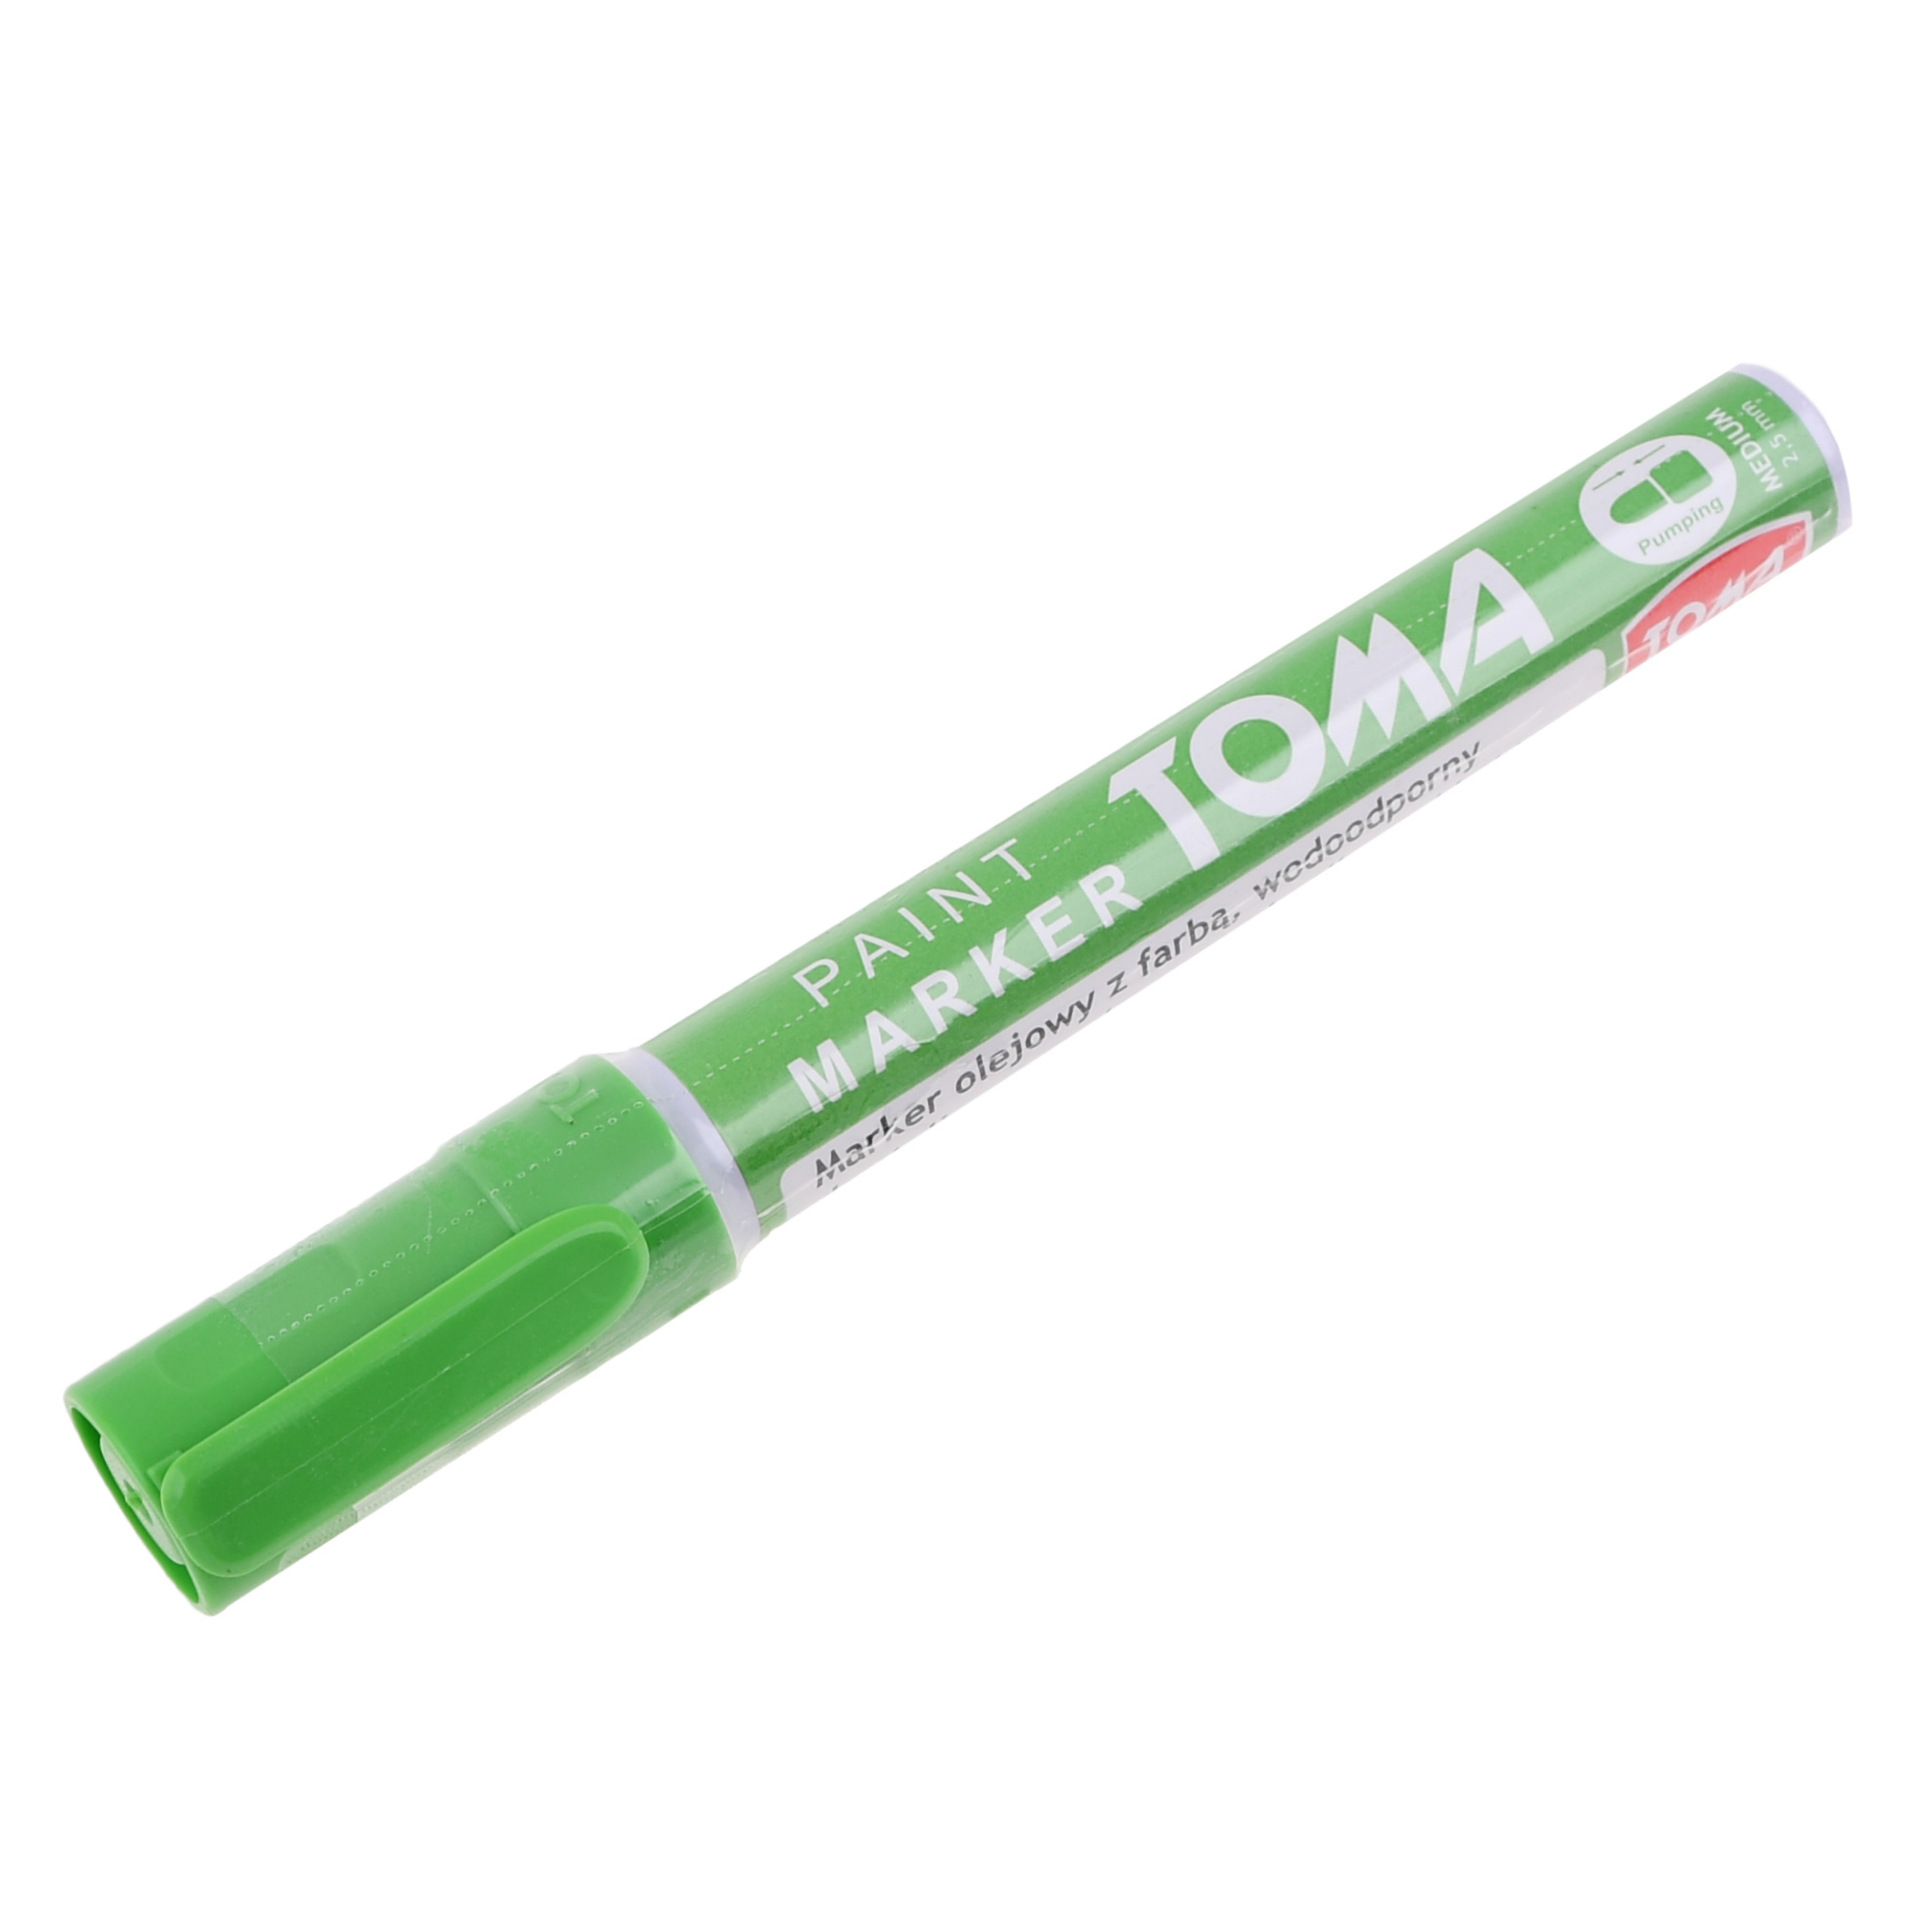 UNIVERSAL Marker / Stift hellgrün für Stahl - Holz - Gummi - Kunststoff - Glas und Reifen - Reifenstift (hergestellt in der EU)